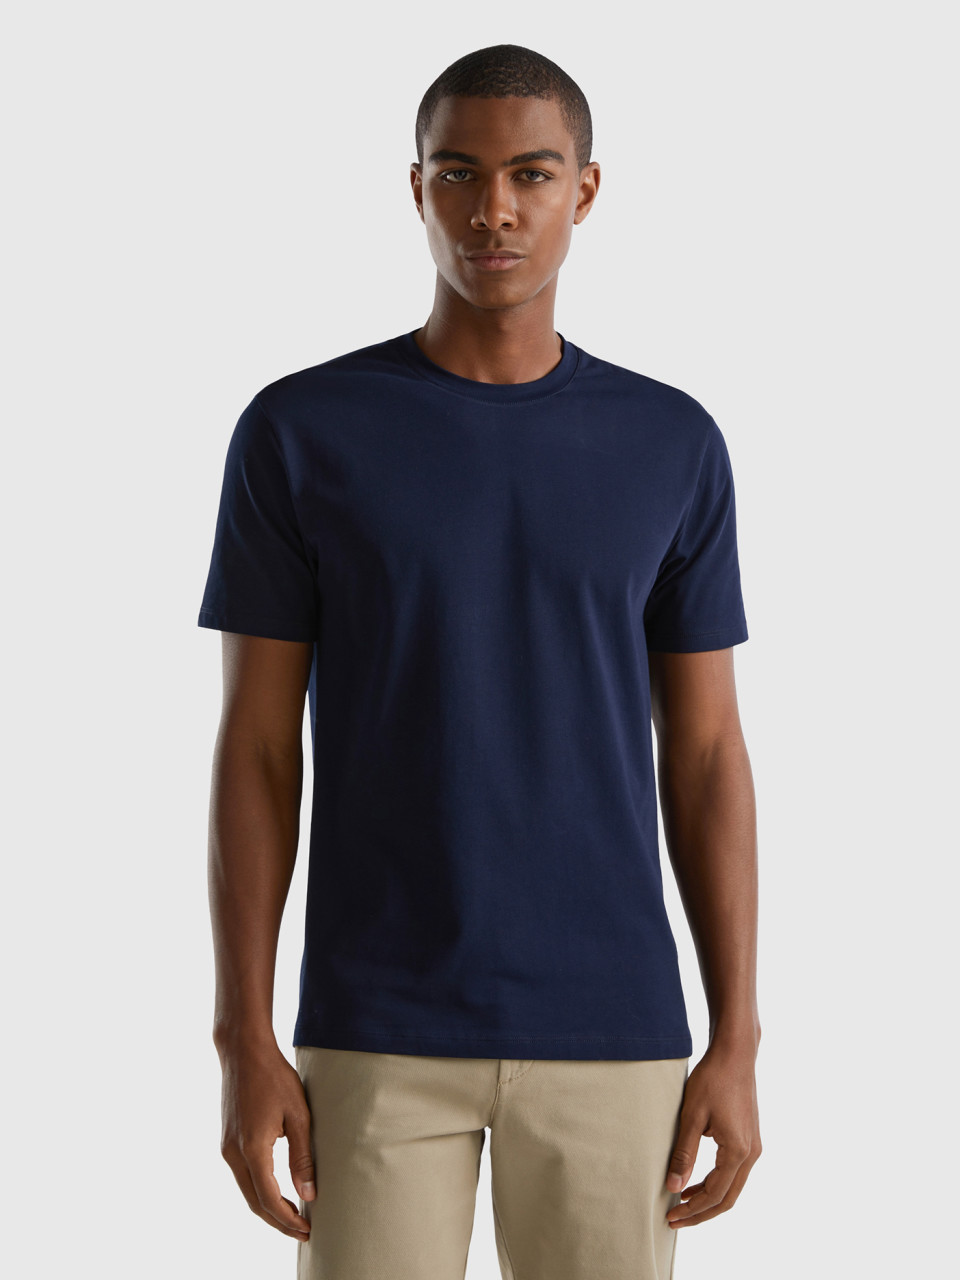 Benetton, Camiseta Slim Fit De Algodón Elástico, Azul Oscuro, Hombre